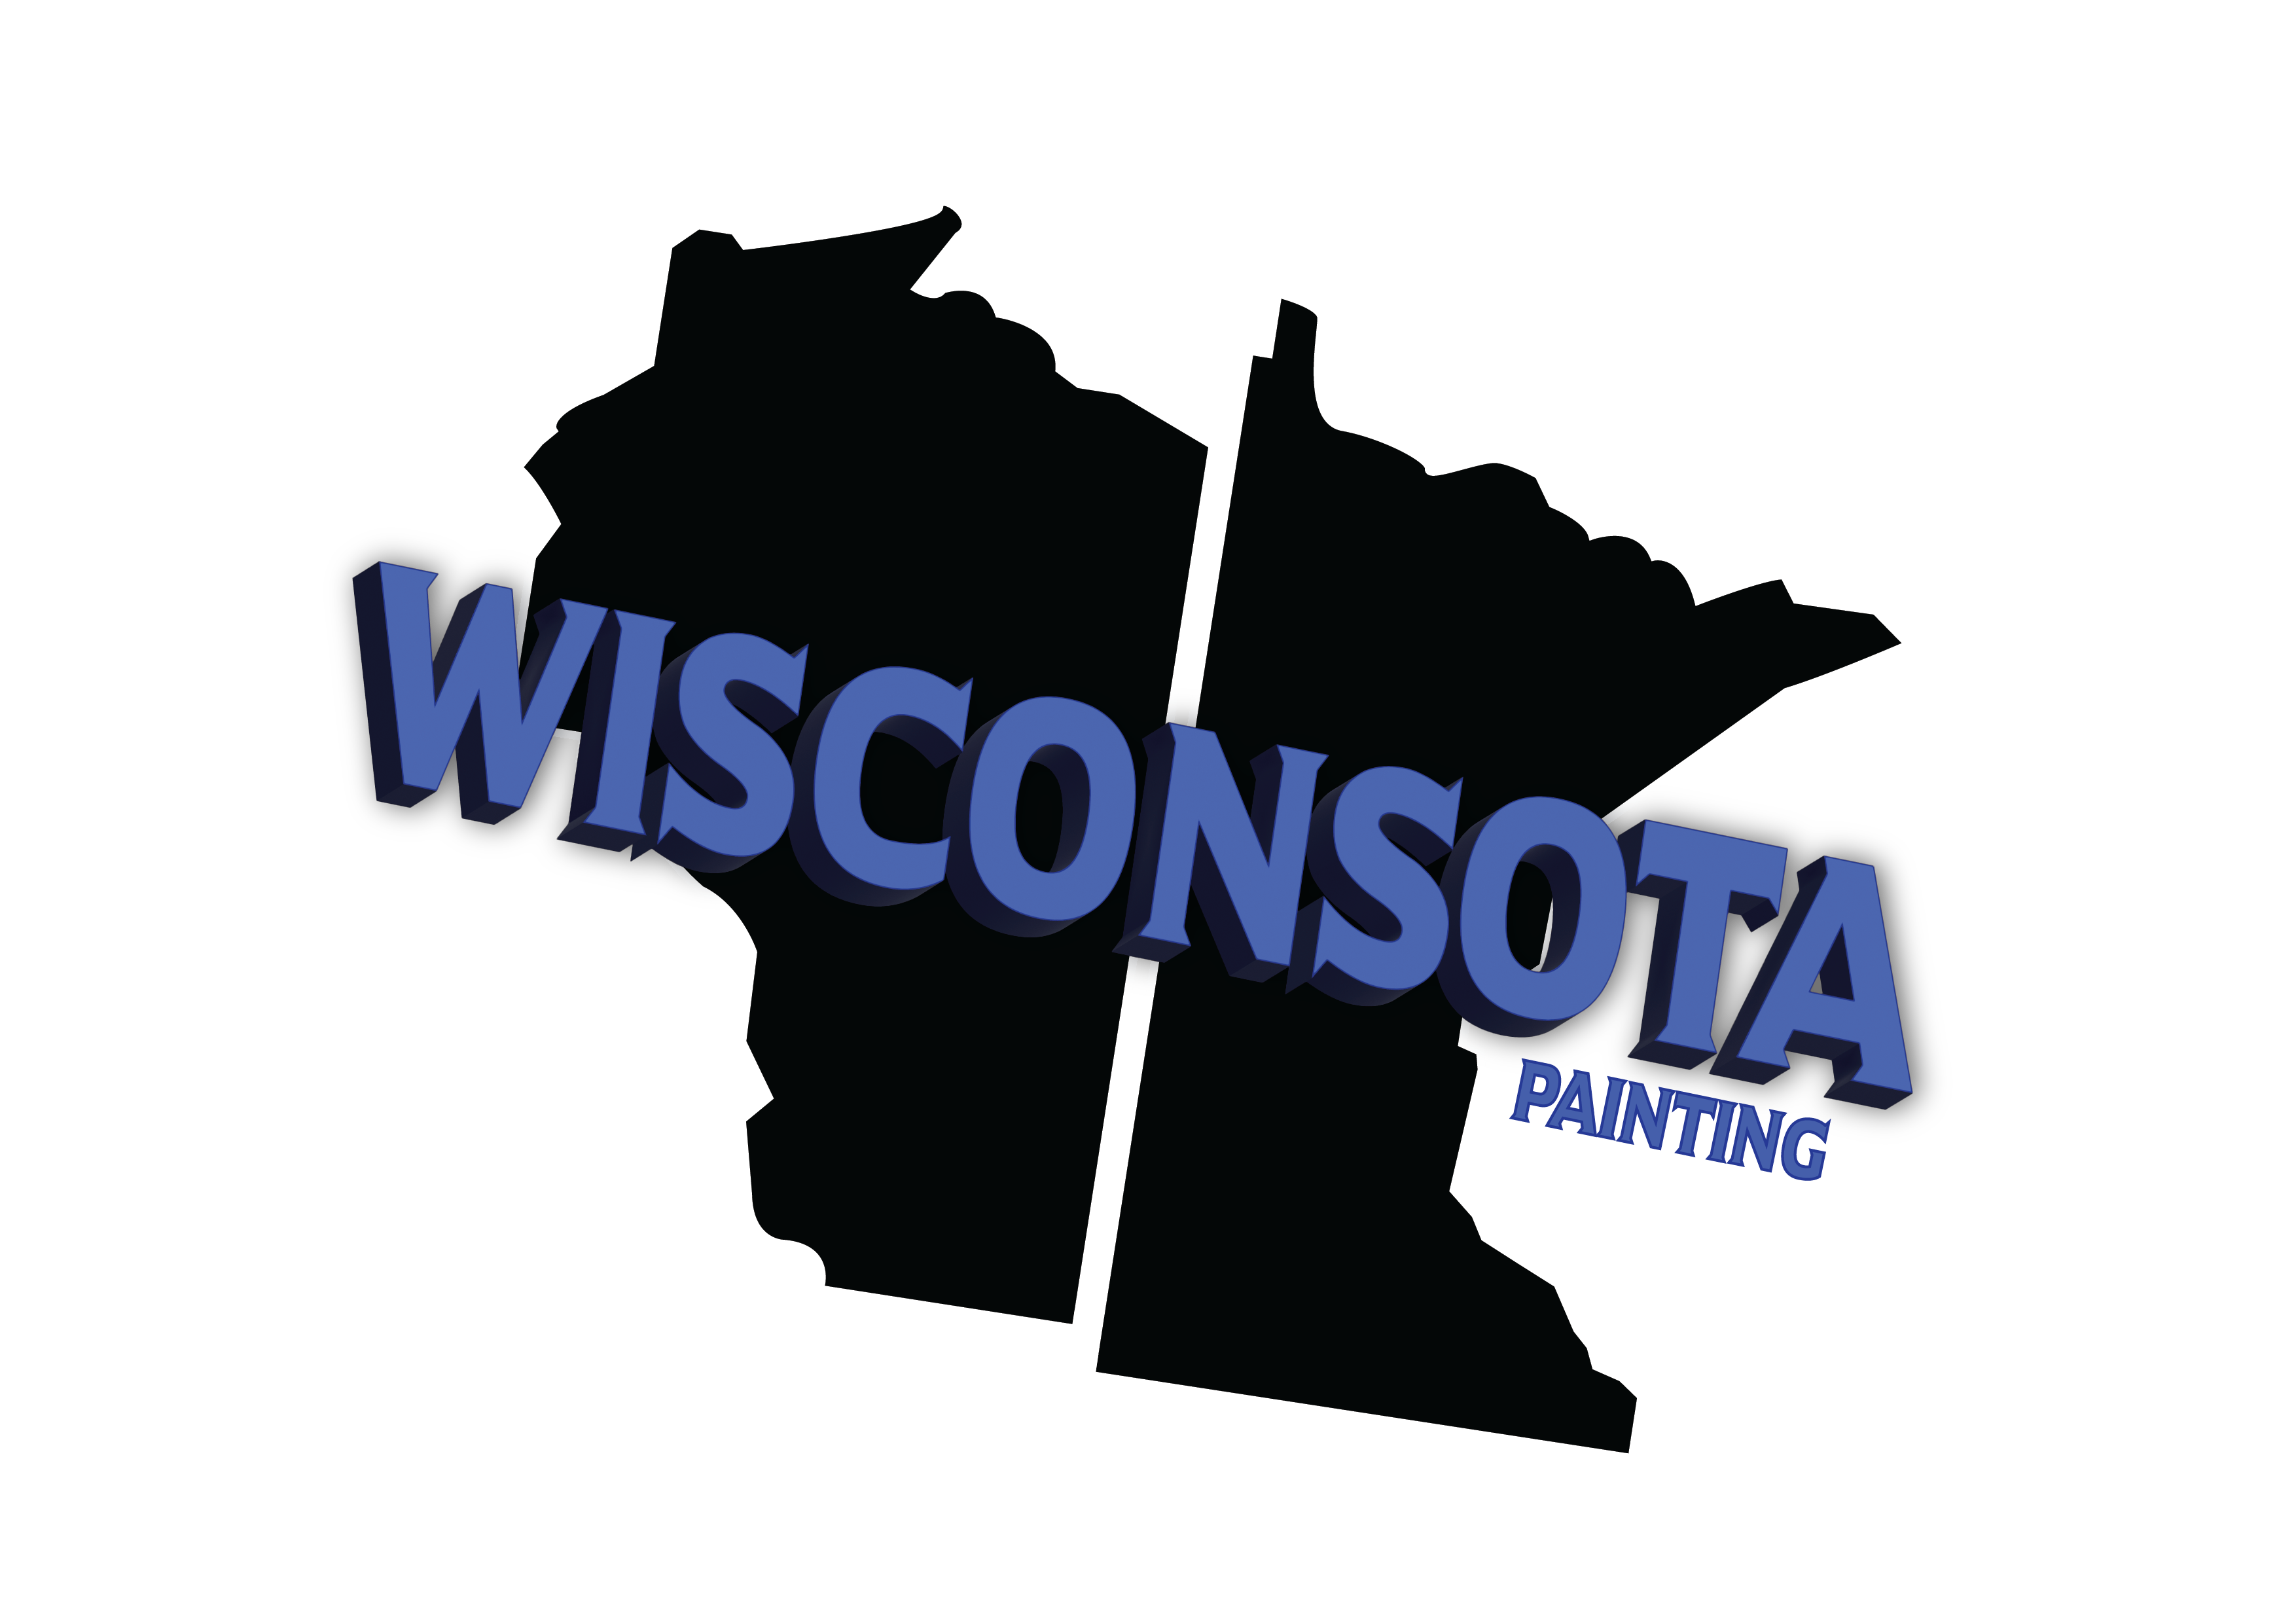 Wisconsota Painting Logo